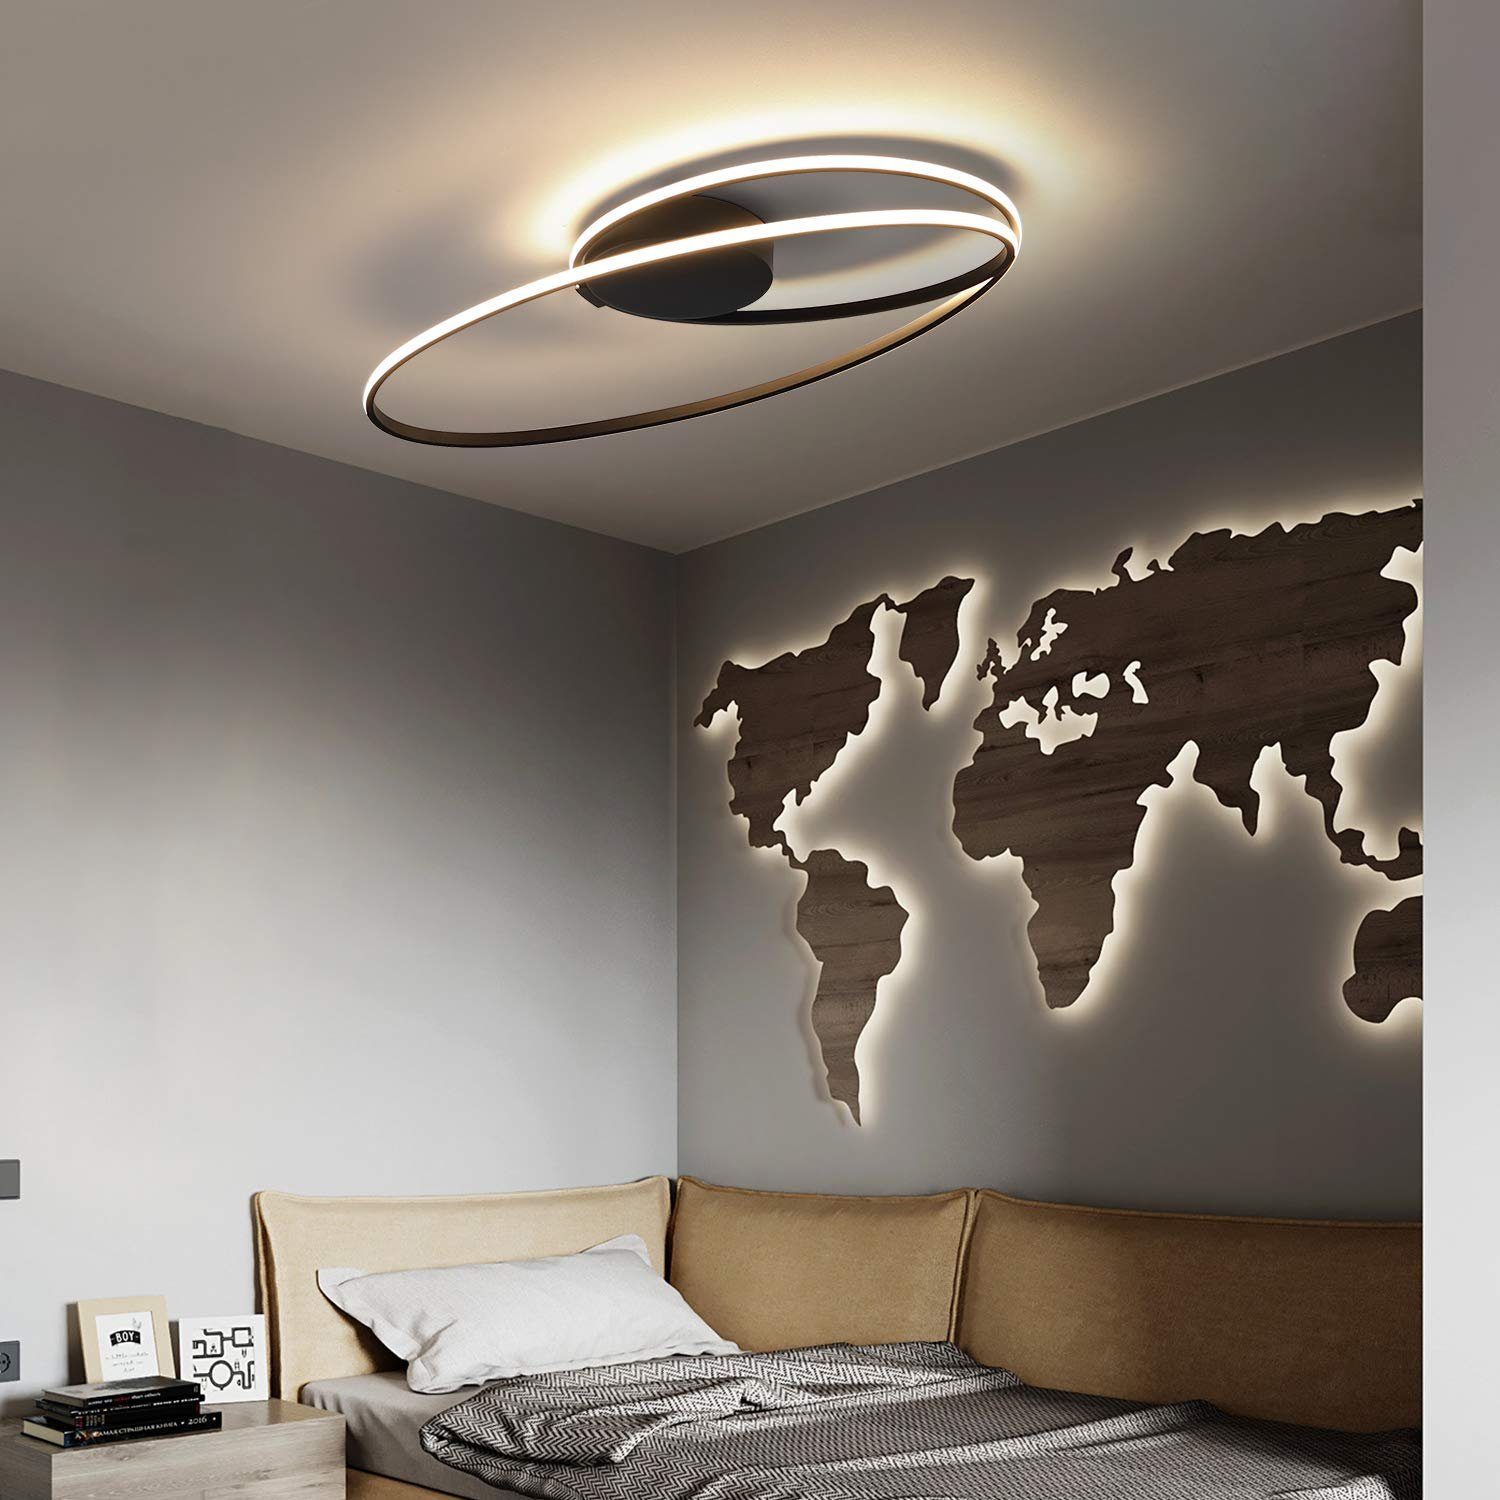 ZMH LED integriert, Beleuchtung, Deckenleuchte Warmweiß, Modern Ring Schwarz, Wohnzimmer 36W Weiß LED Innen fest